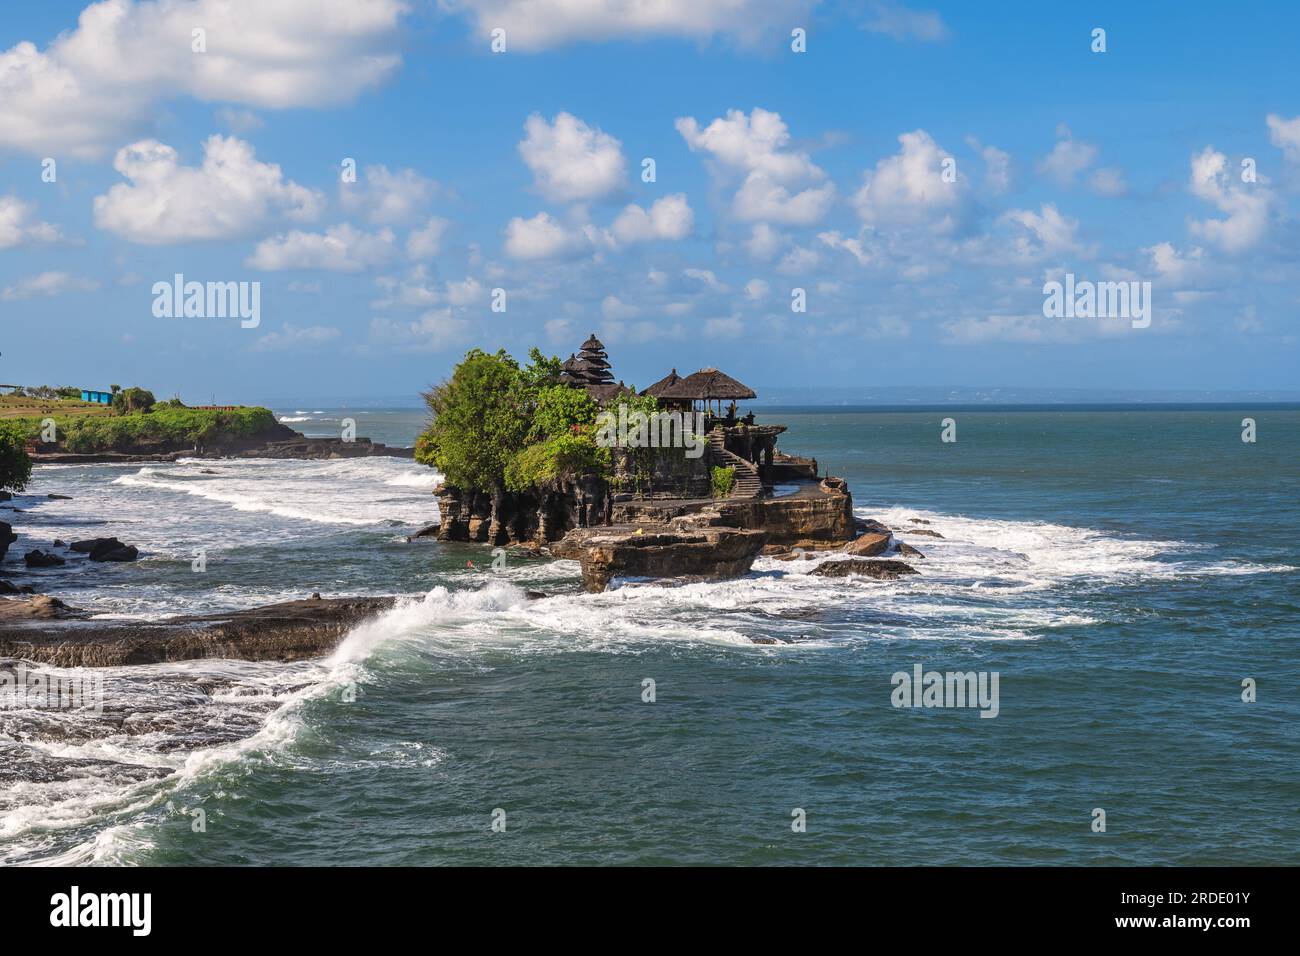 Pura Tanah Lot sur le temple Tanah Lot, une formation rocheuse au large de l'île indonésienne de Bali. Banque D'Images